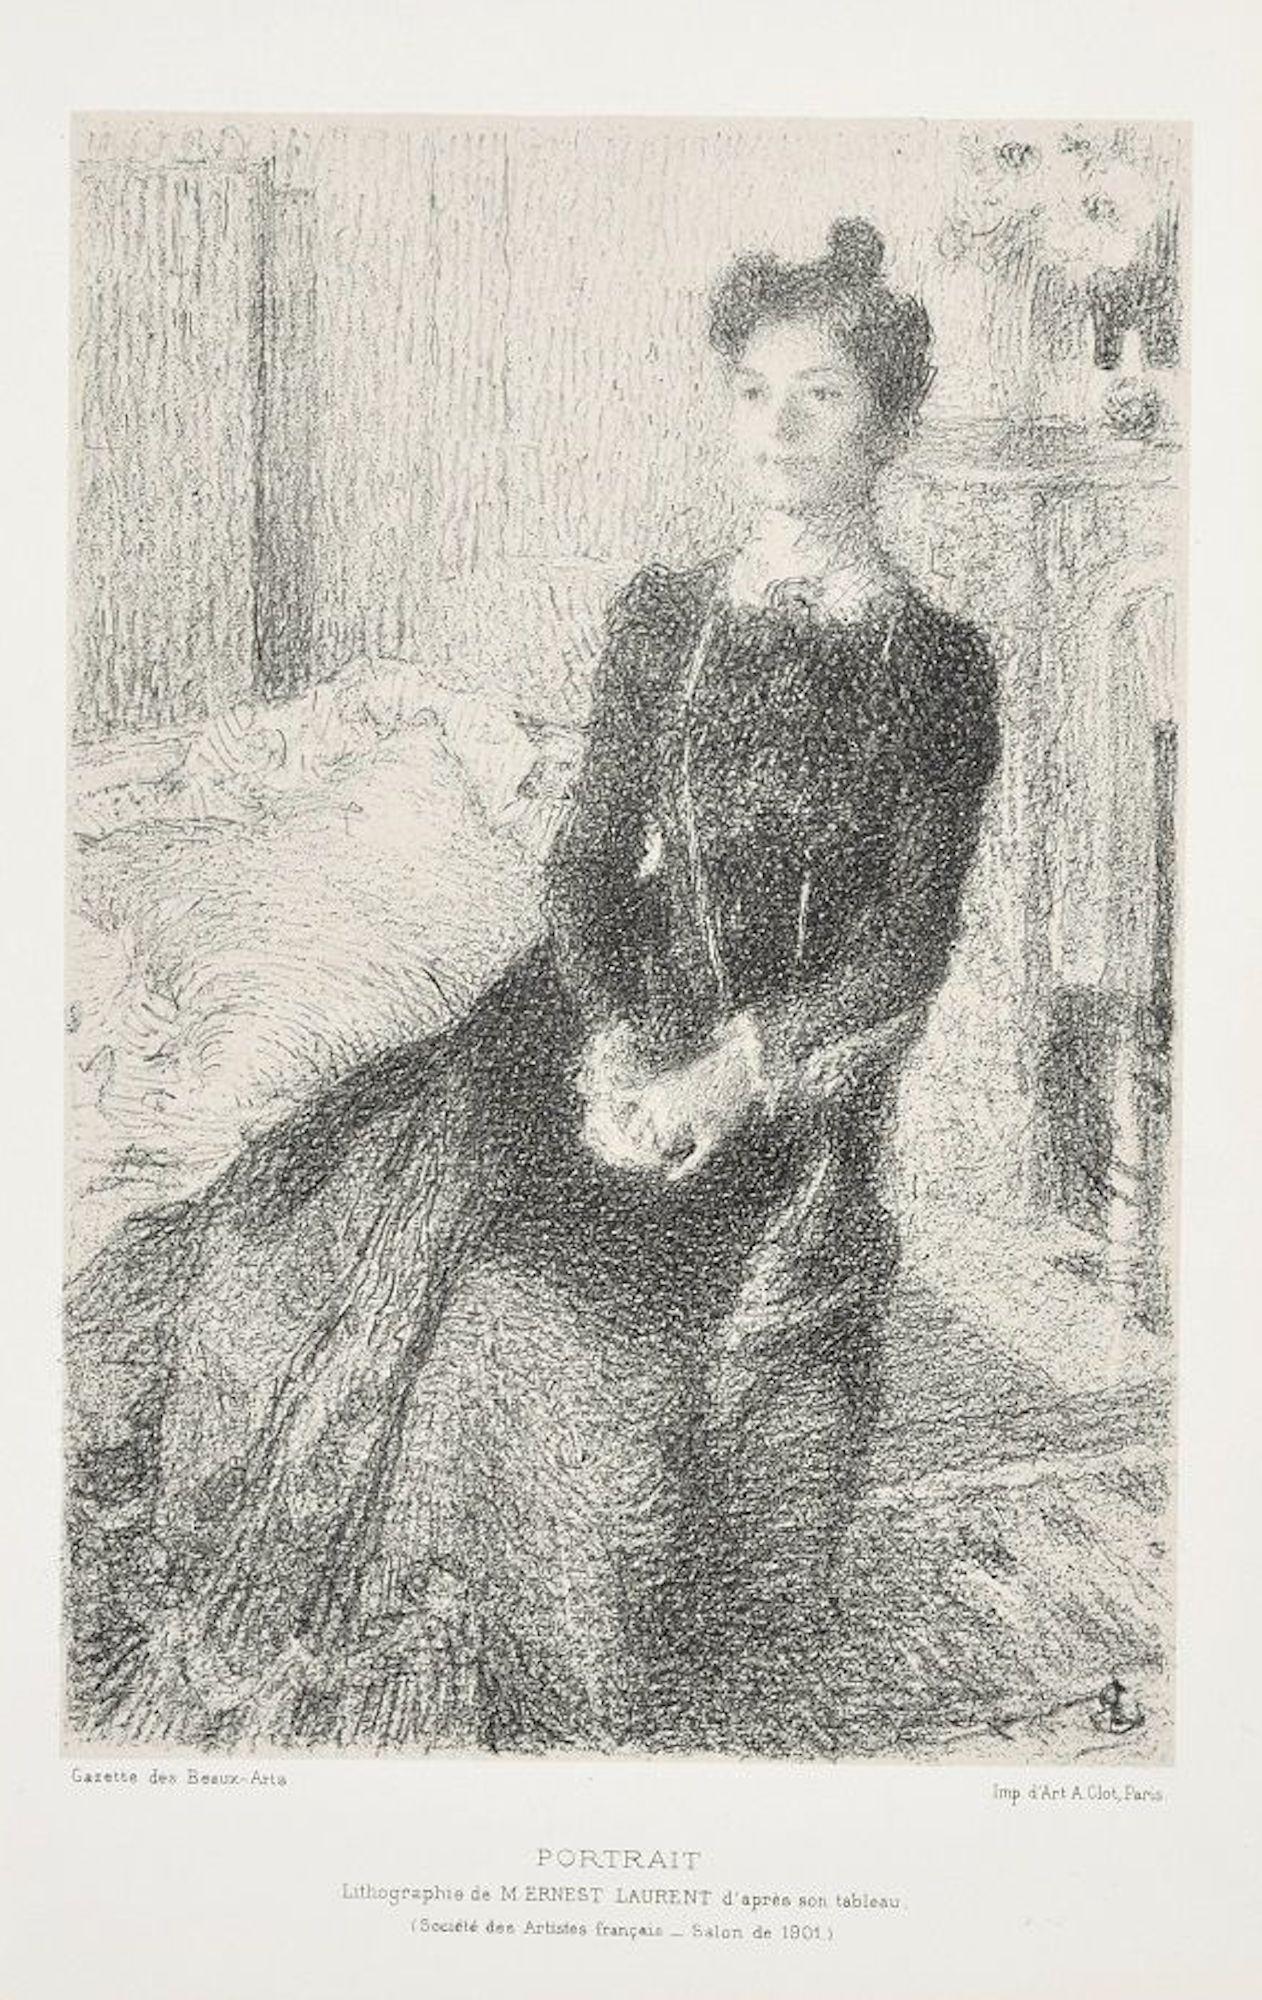 Porträt einer Frau – Lithographie von E. Laurent – 1901, ca.